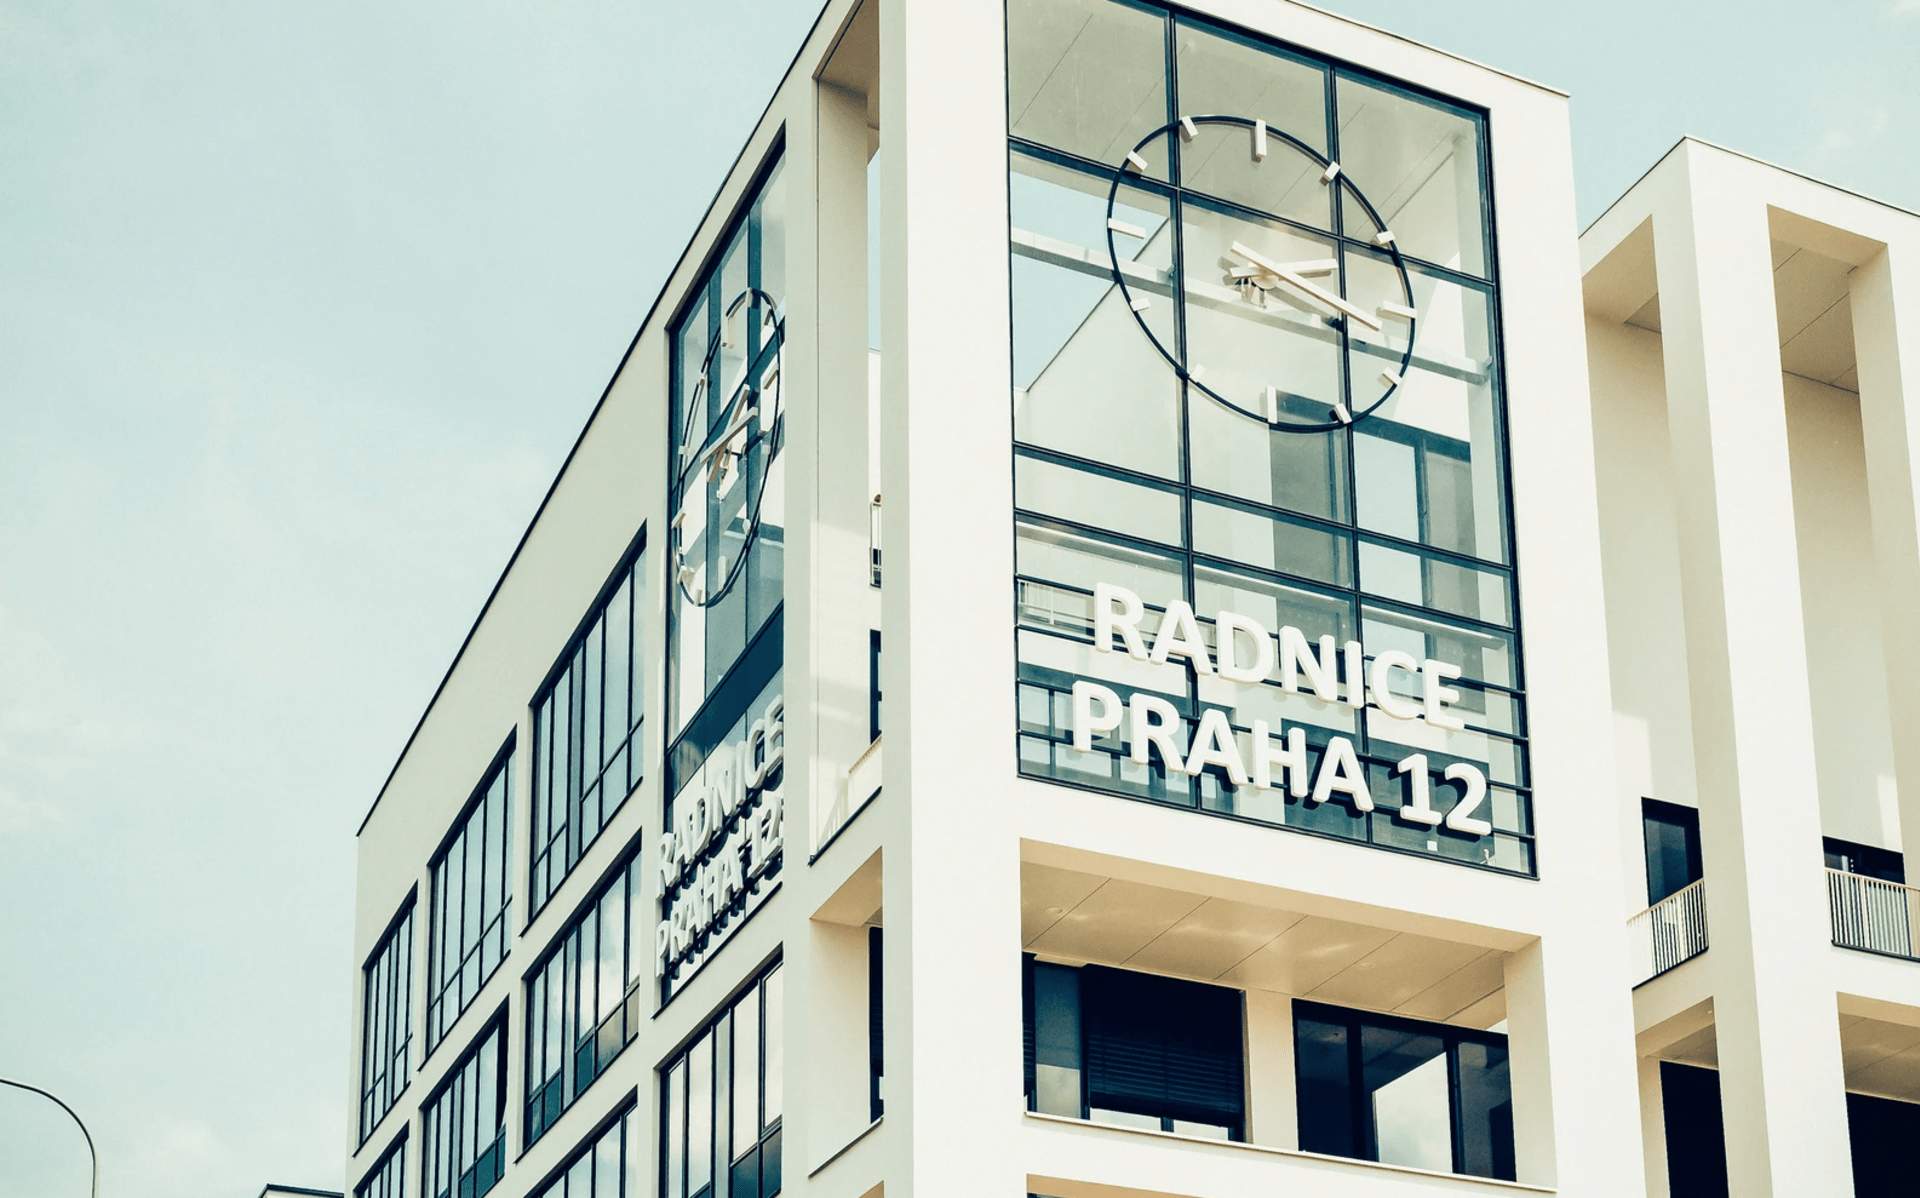 Moderní stavba se zaměřením na efektivní využívání i úsporu energií, to je radnice Prahy 12.